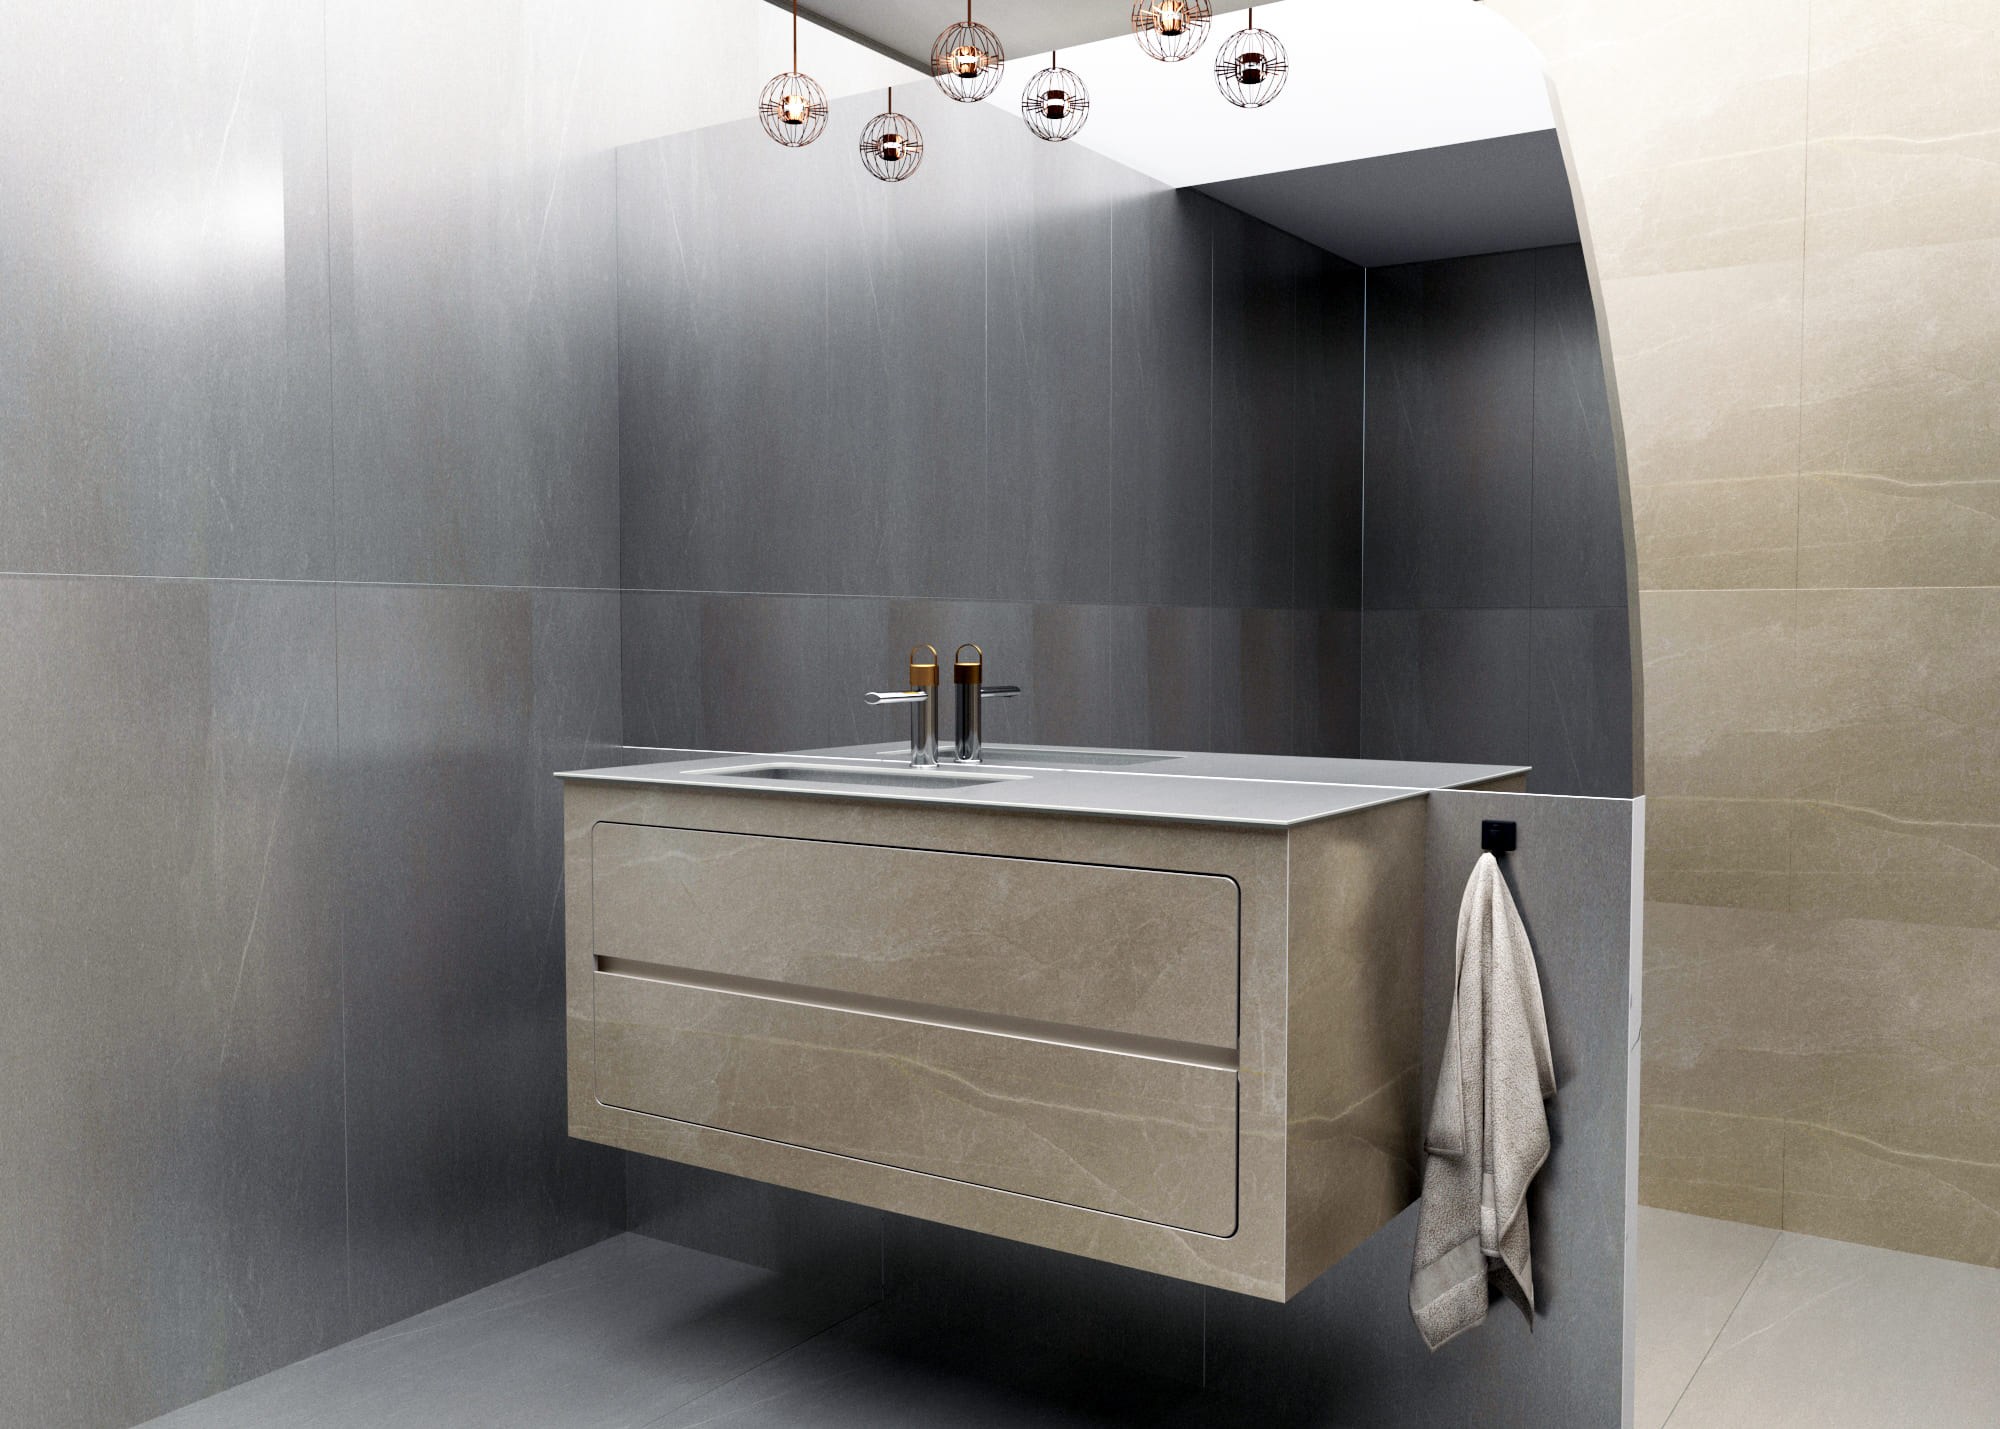 Mueble de baño porcelánico a medida y personalizable. Mueble de baño de diseño. Mueble de baño premium. Mueble de baño moderno